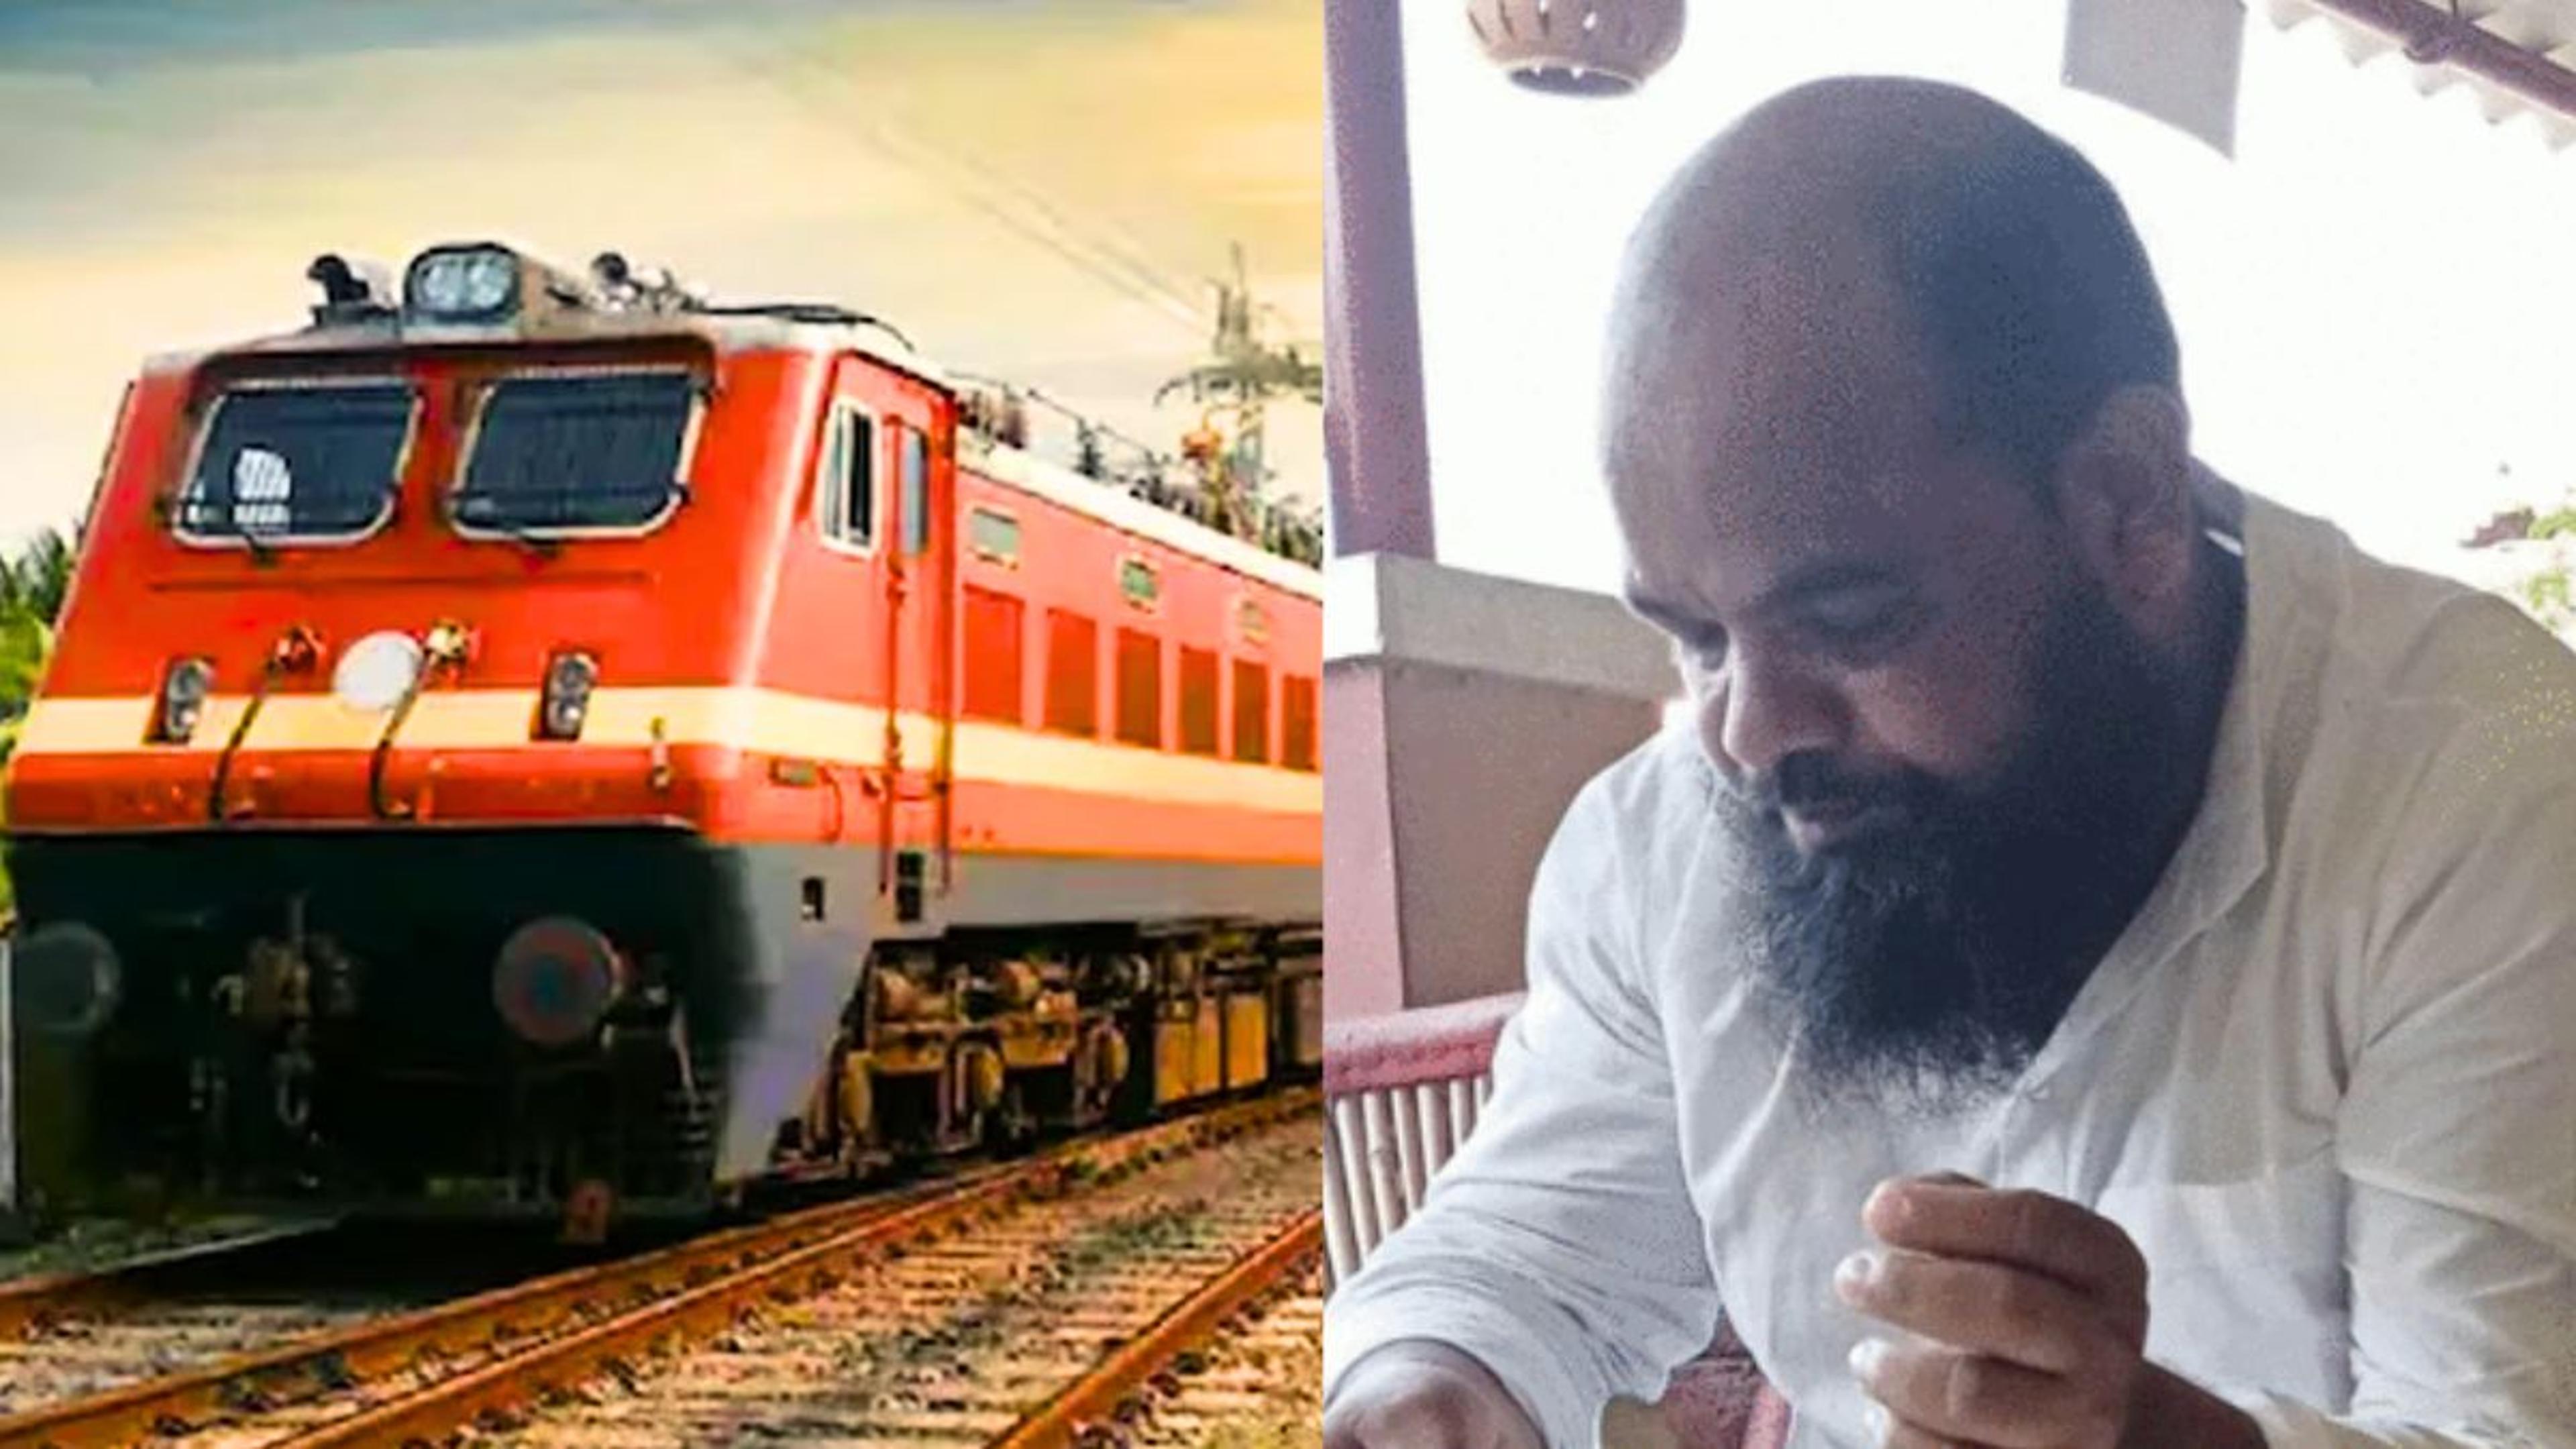 Jaunpur Journalist Murder : टॉयलेट का बहाना बनाकर चलती ट्रेन से कूद गया, पत्रकार
की हत्या का आरोपी